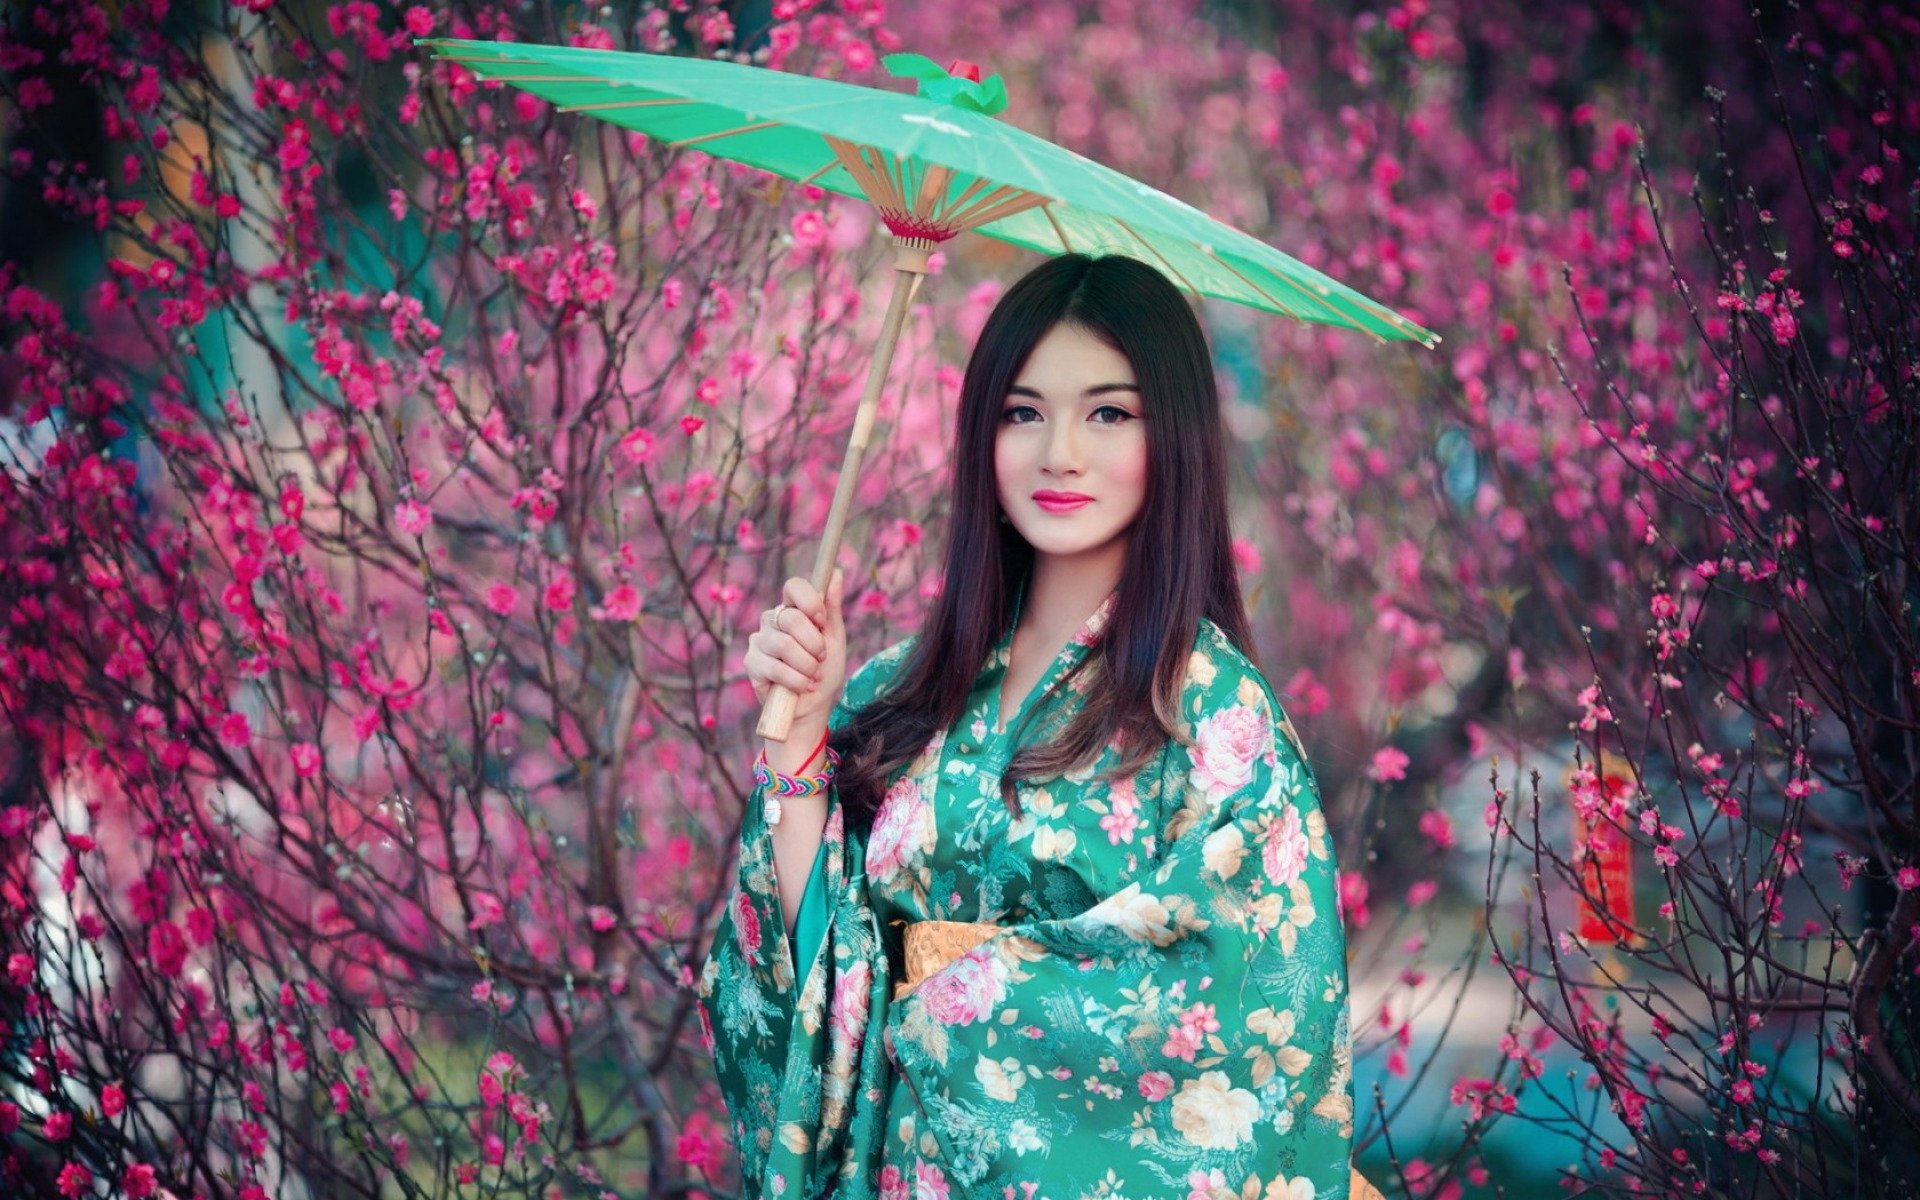 ragazza giapponese hd wallpaper,rosa,verde,bellezza,viola,moda